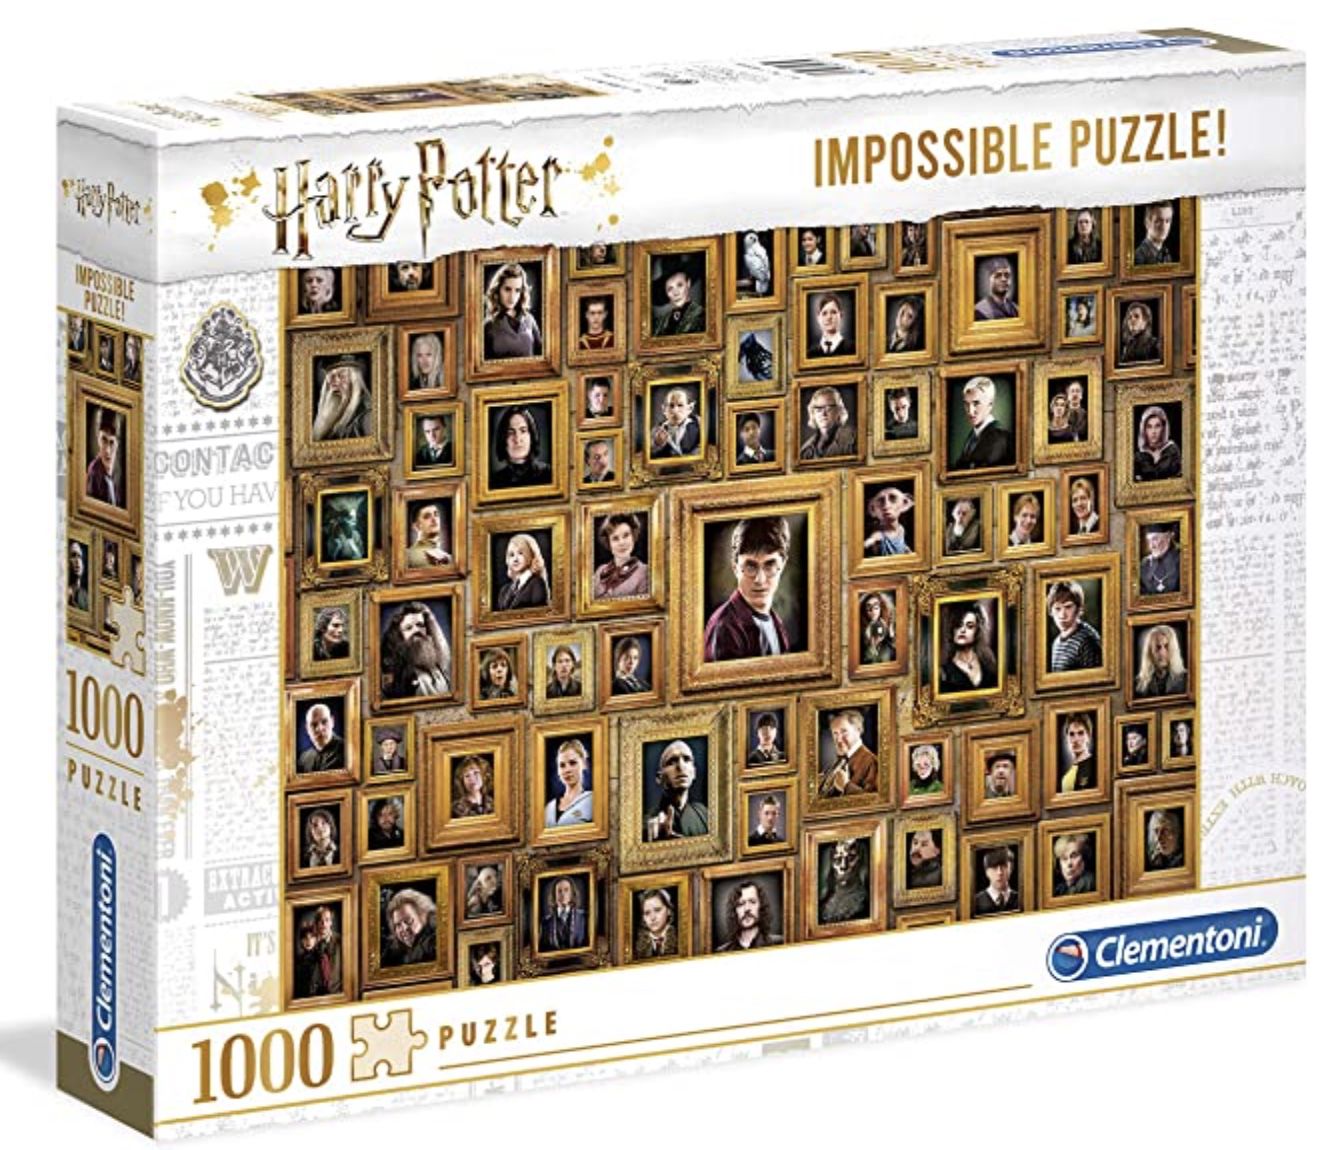 Clementoni 61881 Impossible Puzzle Harry Potter mit 1.000 Teilen für 12,99€ (statt 18€) &#8211; Prime